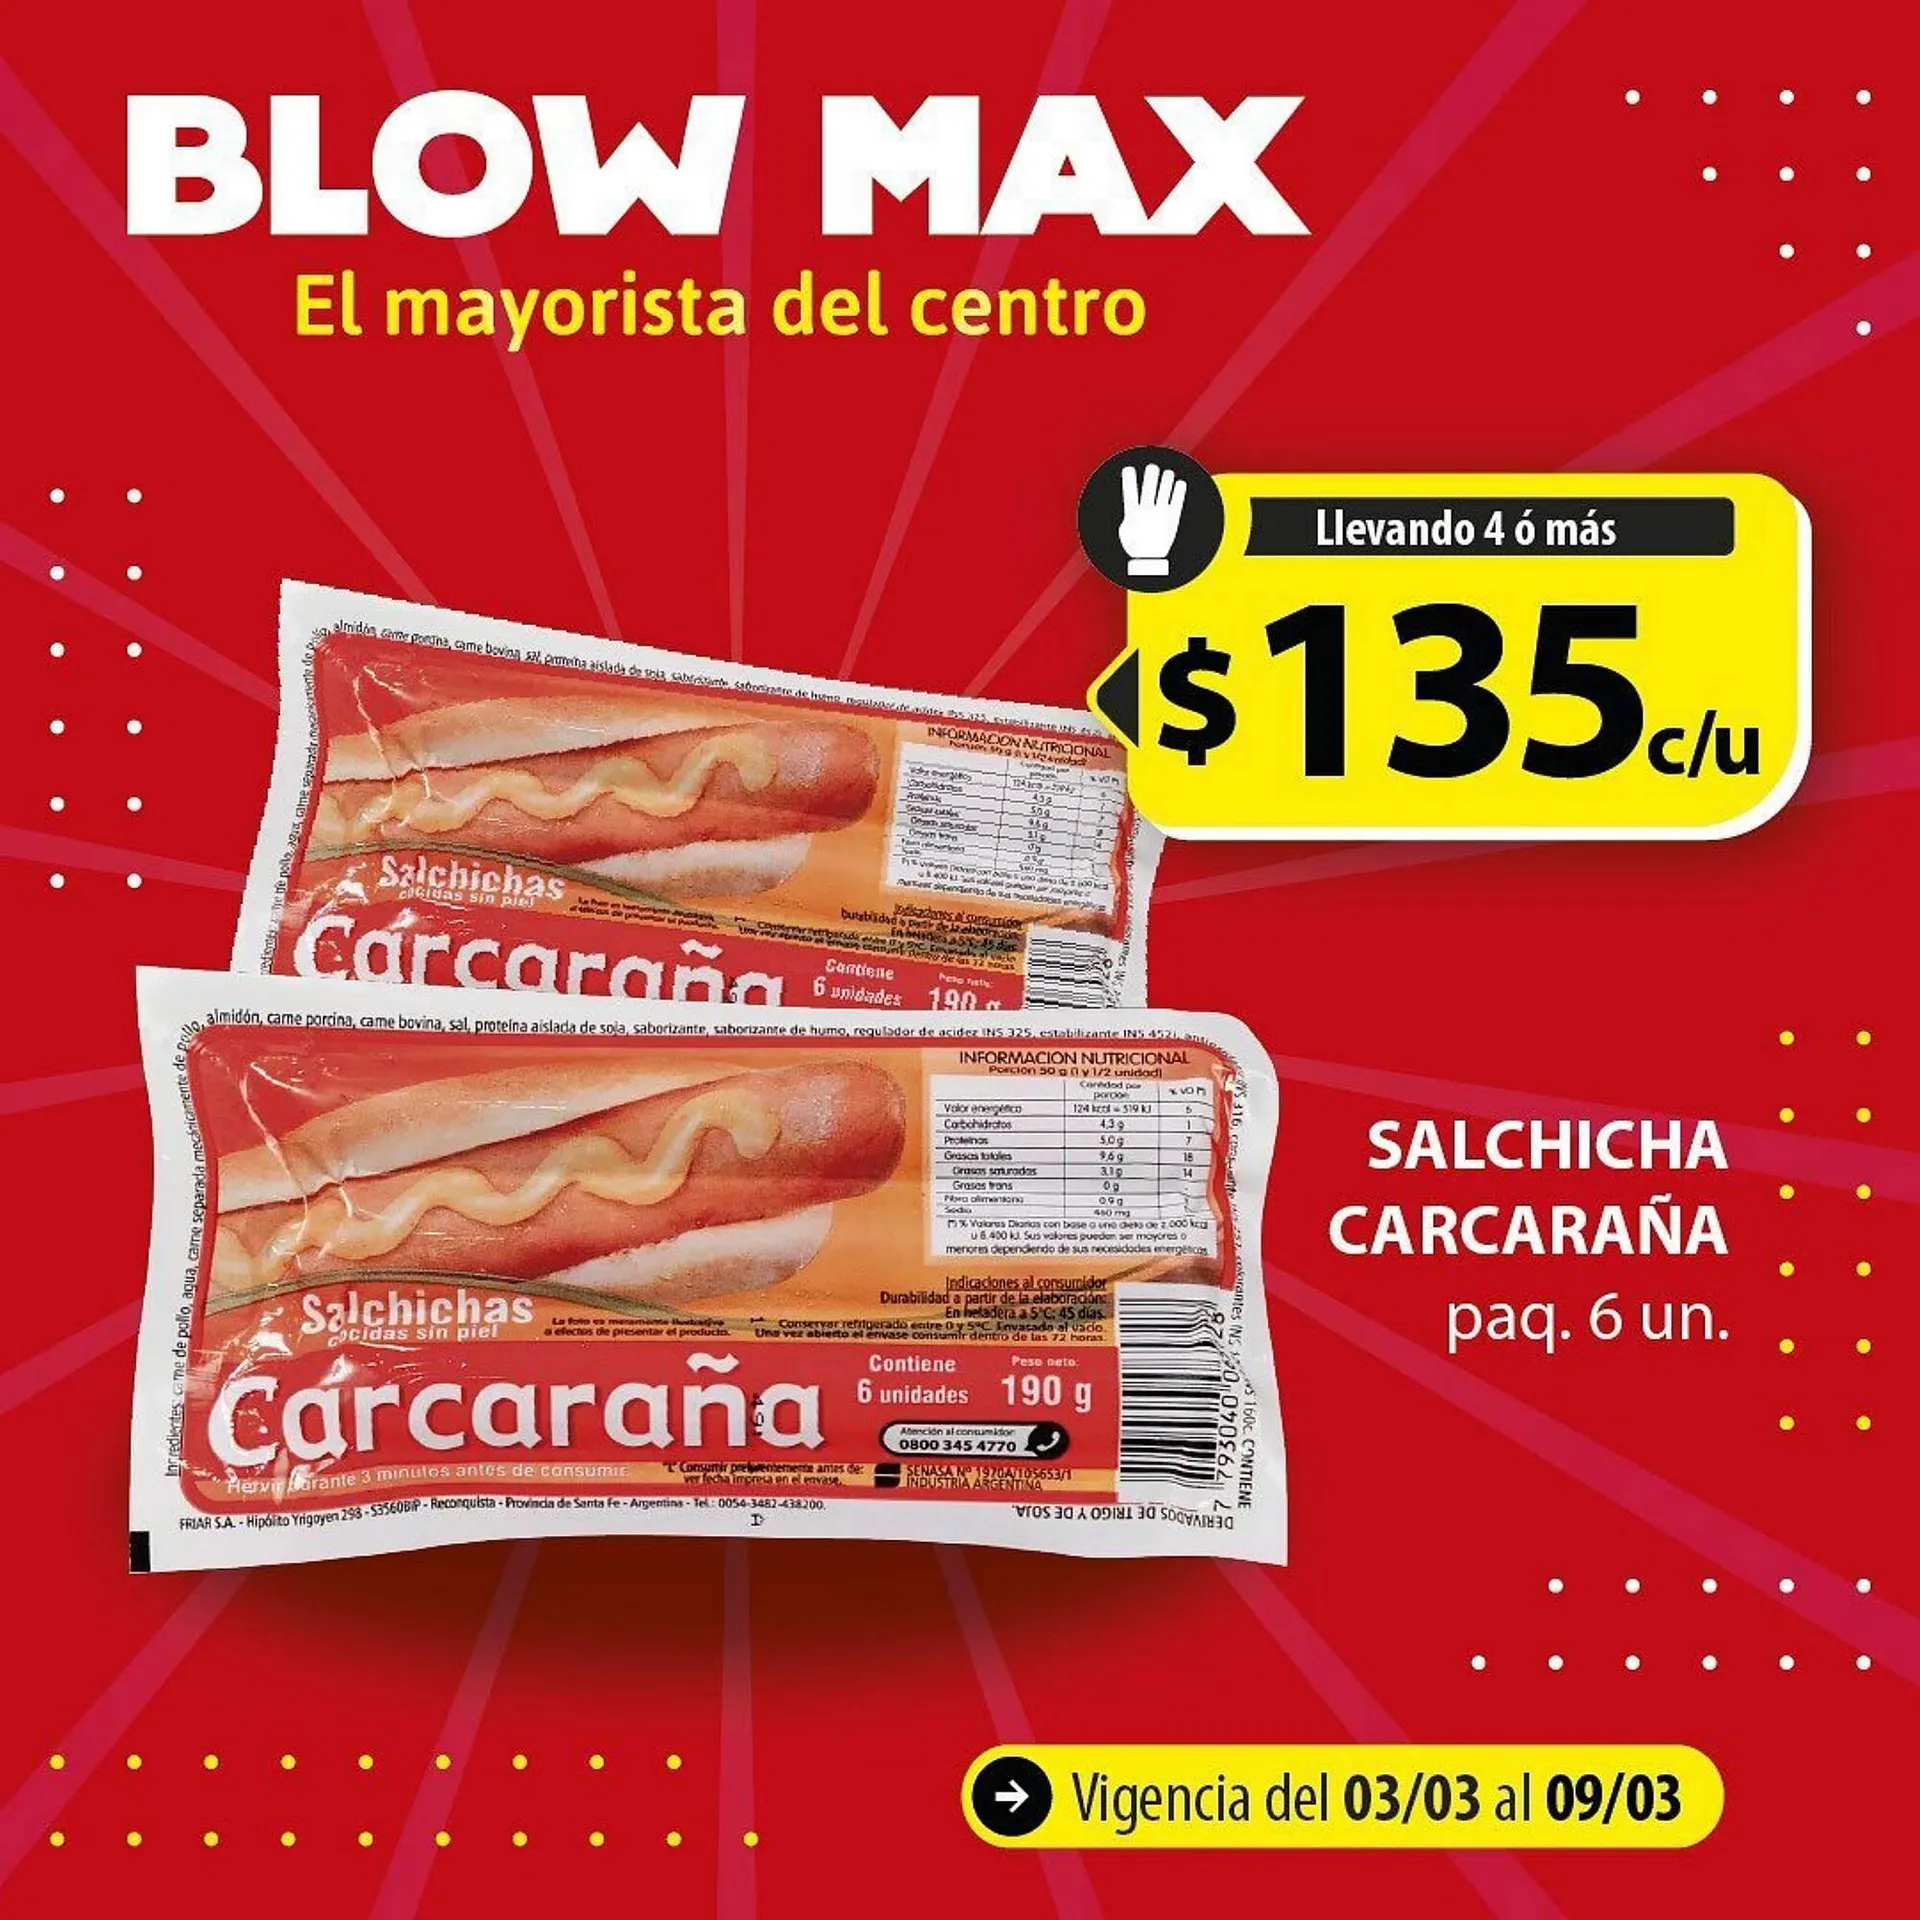 Catálogo Blow Max - 2